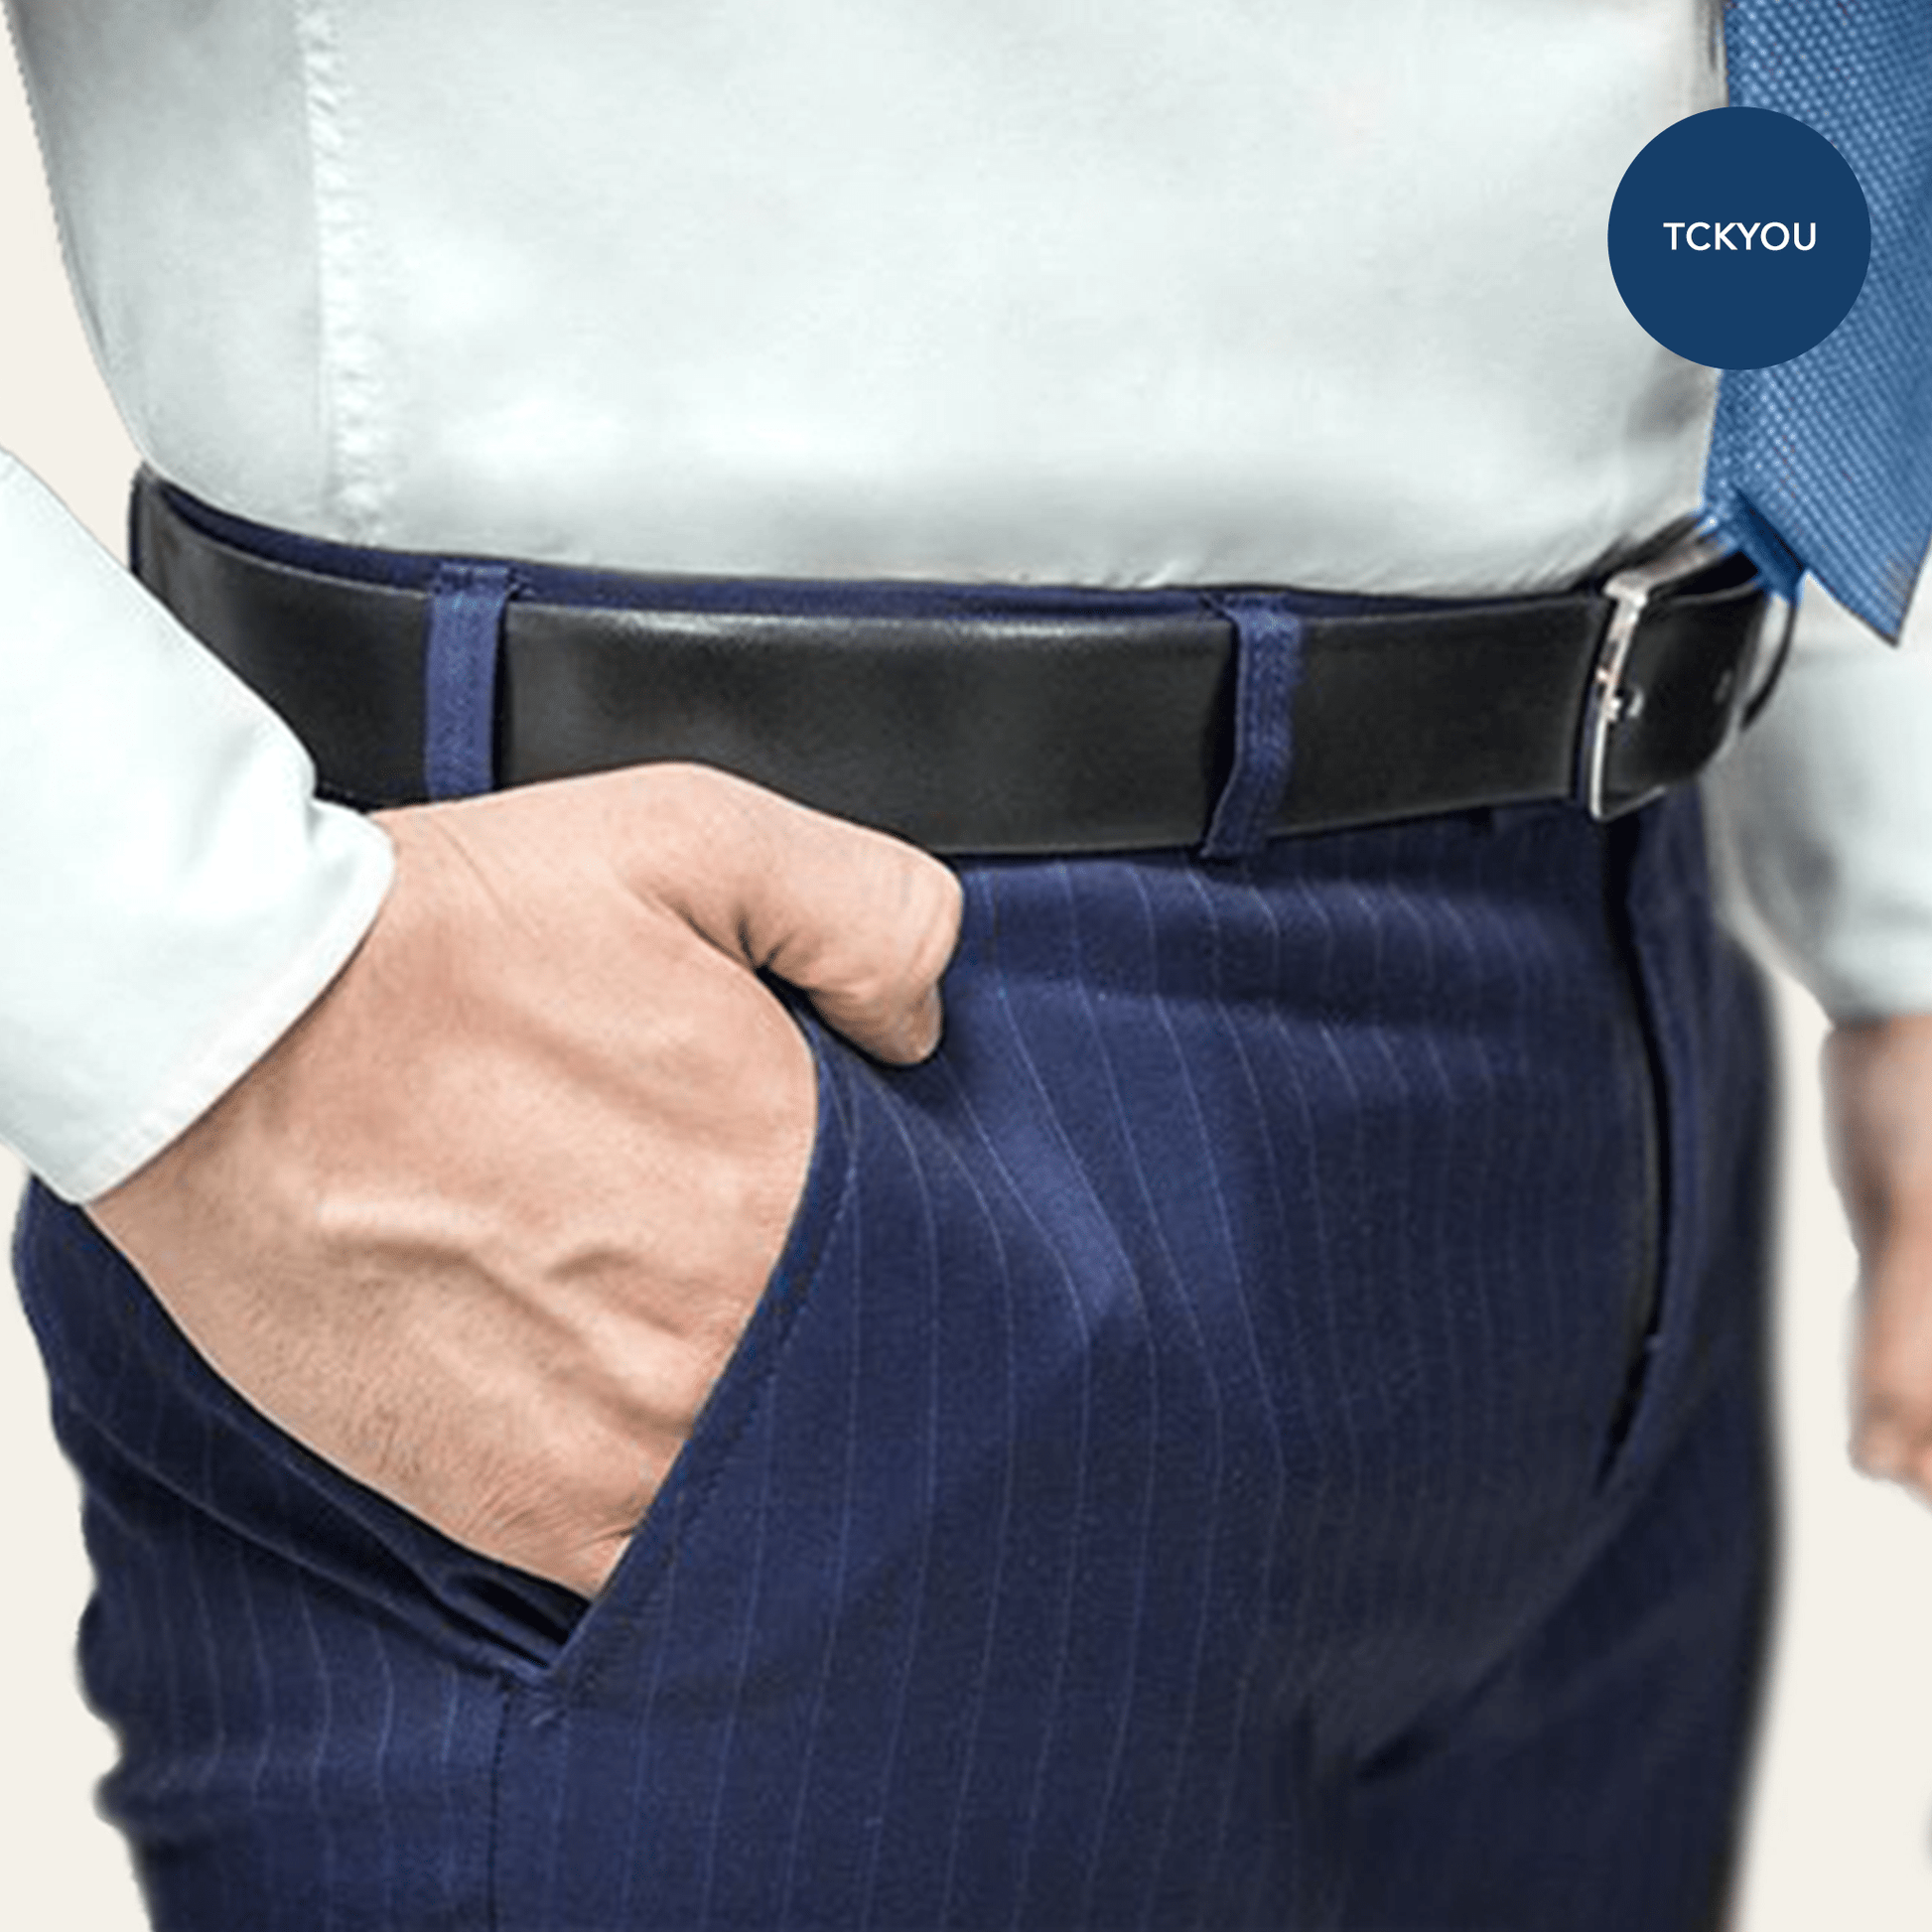 1 Piece Adjustabel Elastic Shirt Stay Belt for For Men Police Keep